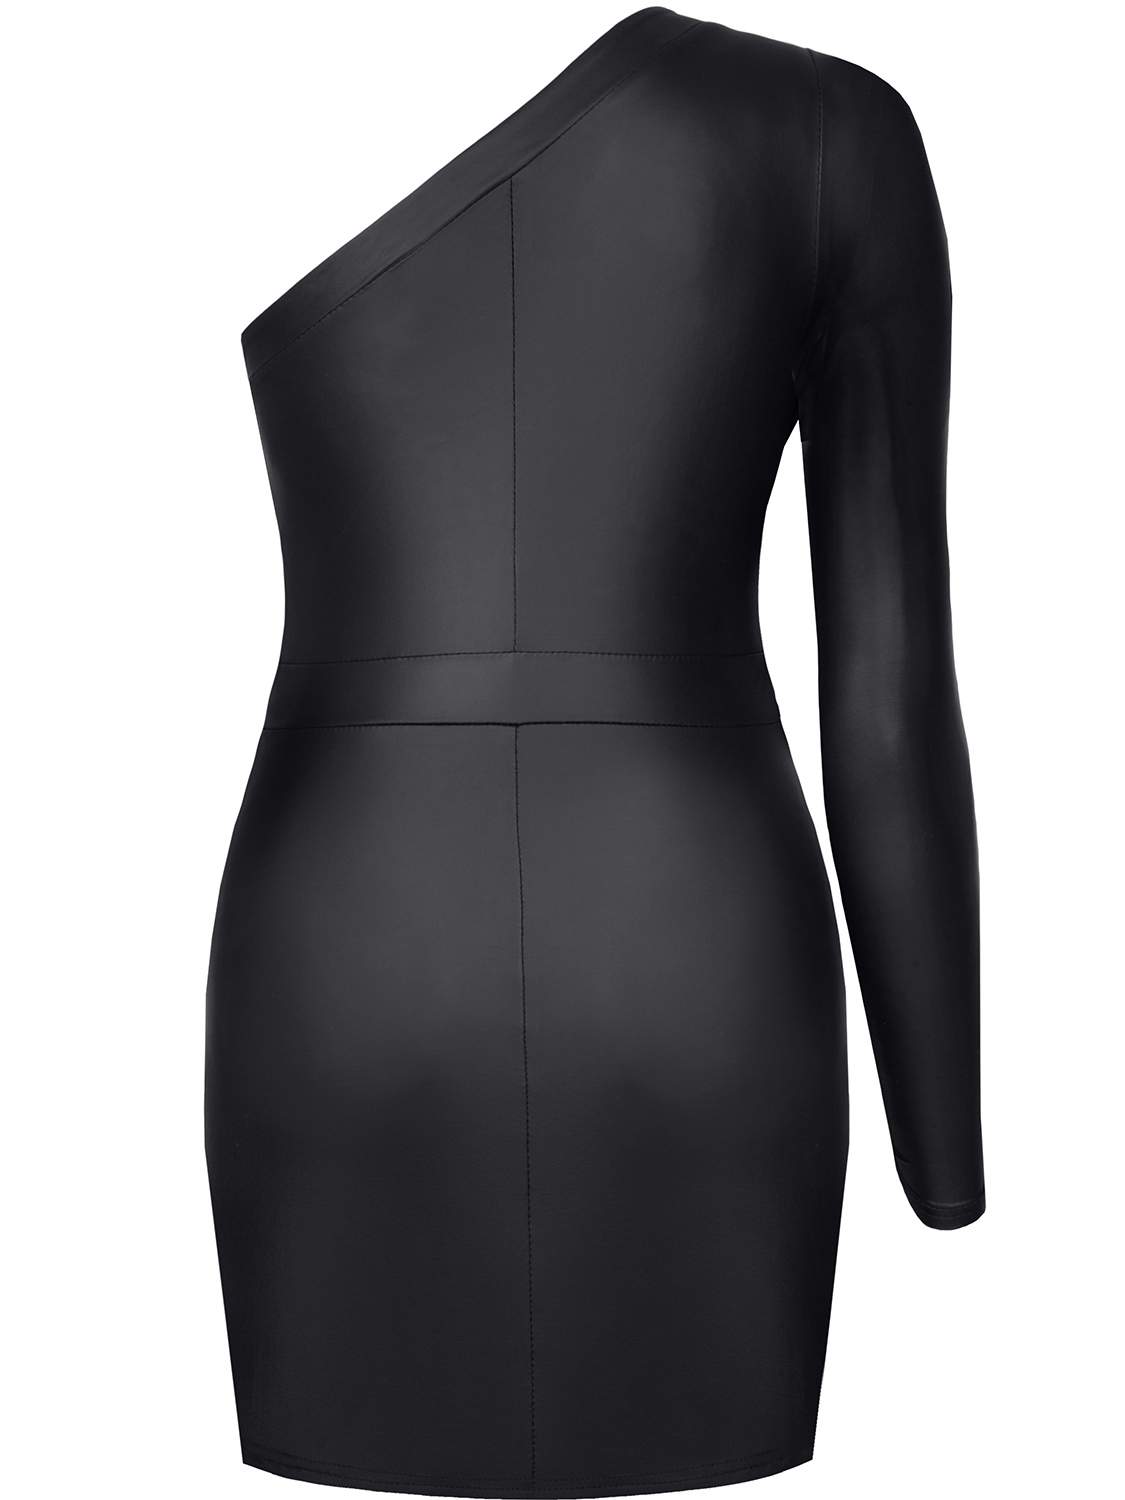 Krótka, asymetryczna sukienka z czarnego, elastycznego materiału Demoniq Felicia